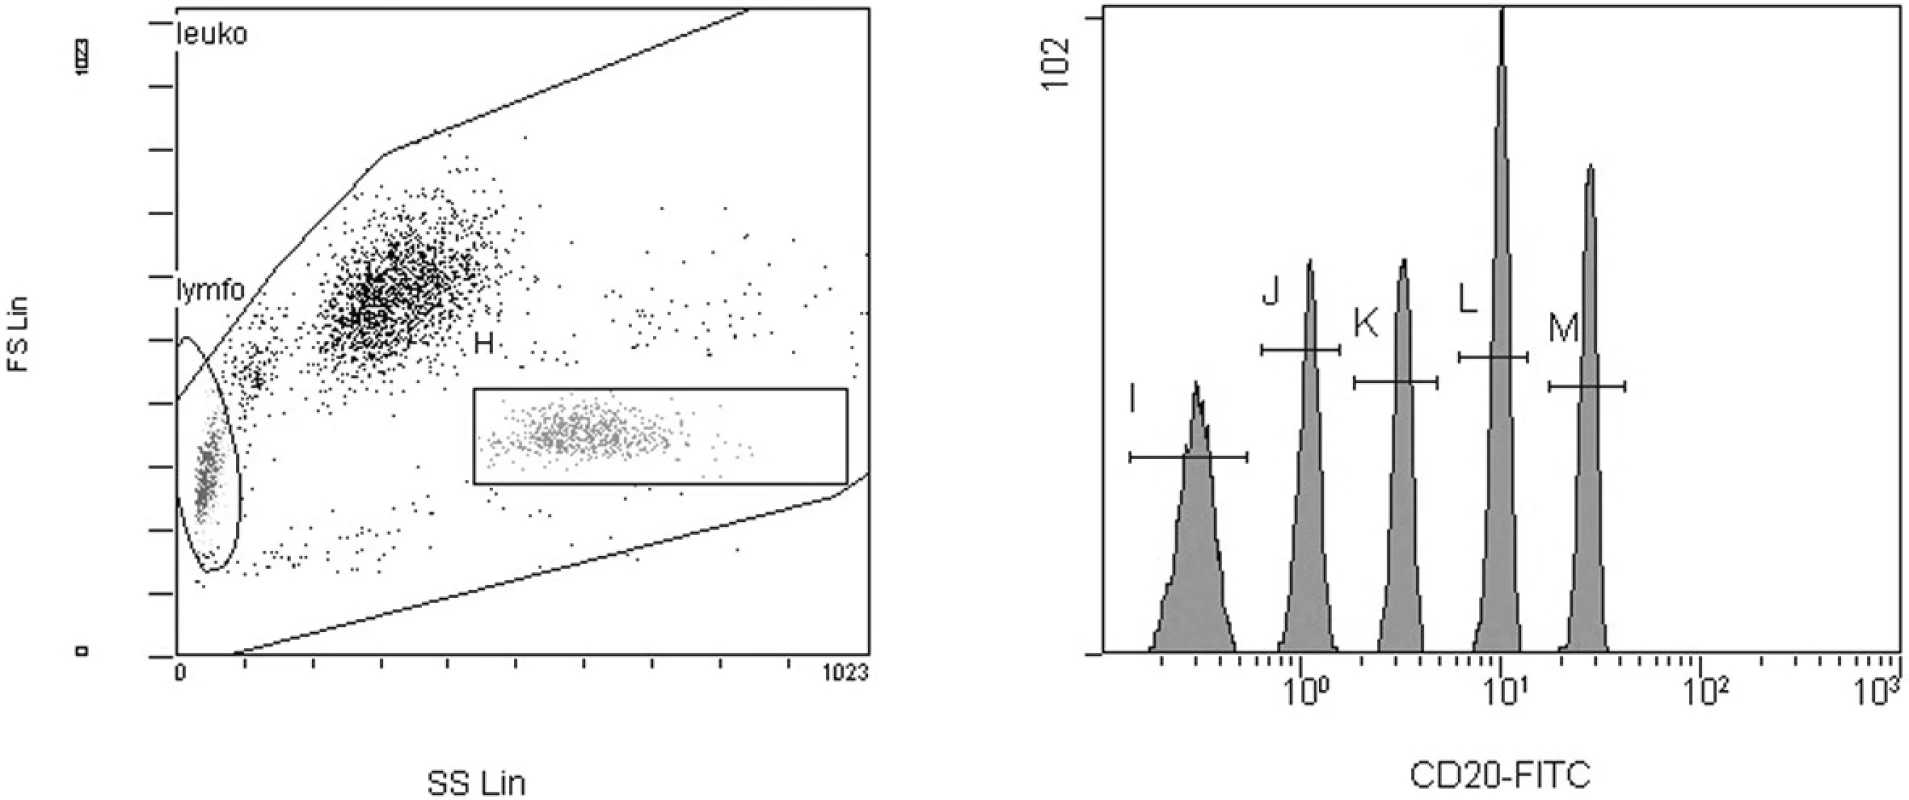 Kalibrační mikročástice na histogramech z flowcytometru. Gating mikročástic byl prováděn na histogramu forward vs. side scatter (FS/SS) (gate H). Střední hodnoty intenzity fluorescence byly měřeny na jednoparametrovém histogramu. Z hodnot intenzity fluorescence a standardizovaných hodnot v MESF jednotkách pro jednotlivé skupiny mikročástic o různé intenzitě fluorescence byla sestavena kalibrační křivka.